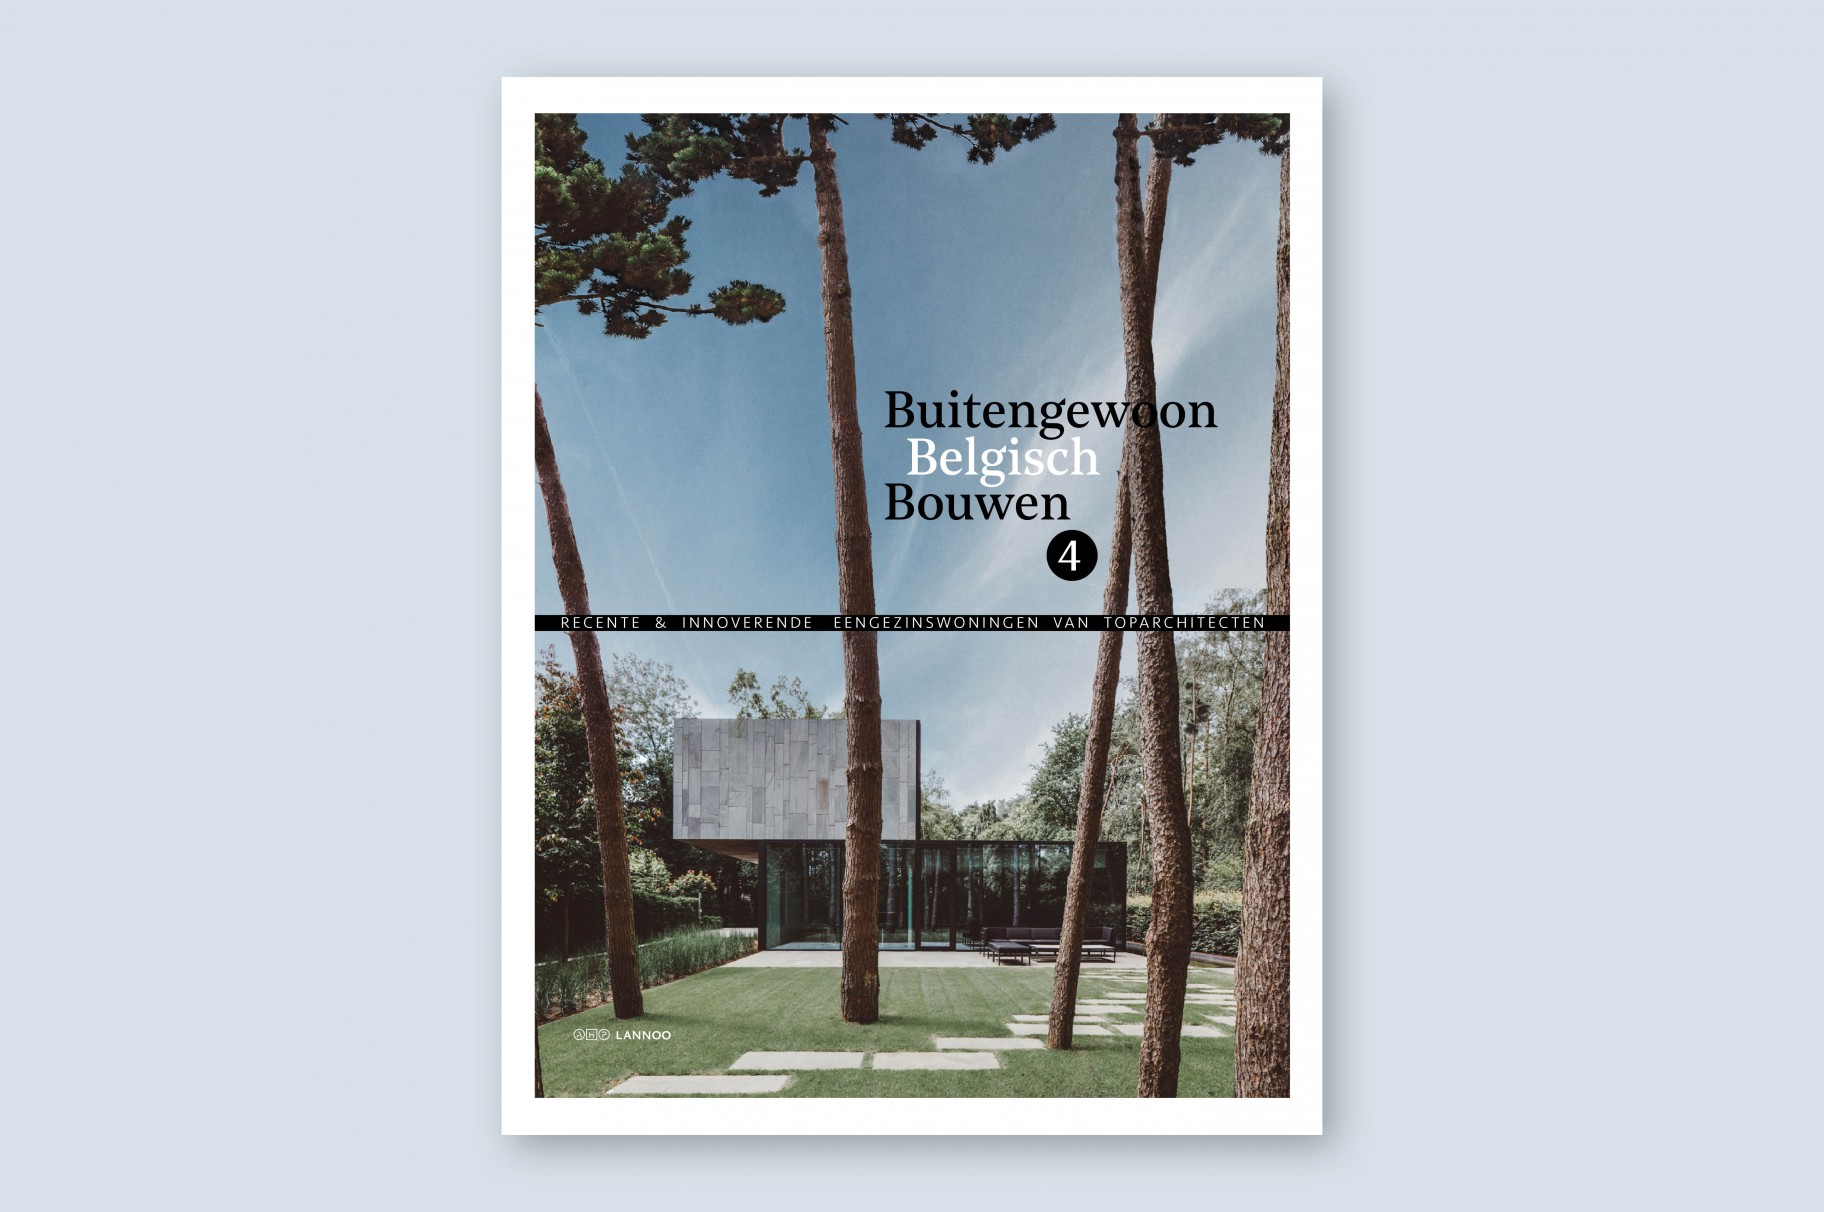 Poolhouse Bornem en Paviljoen Cartuyvels-Klockaerts in Buitengewoon Belgisch Bouwen 4